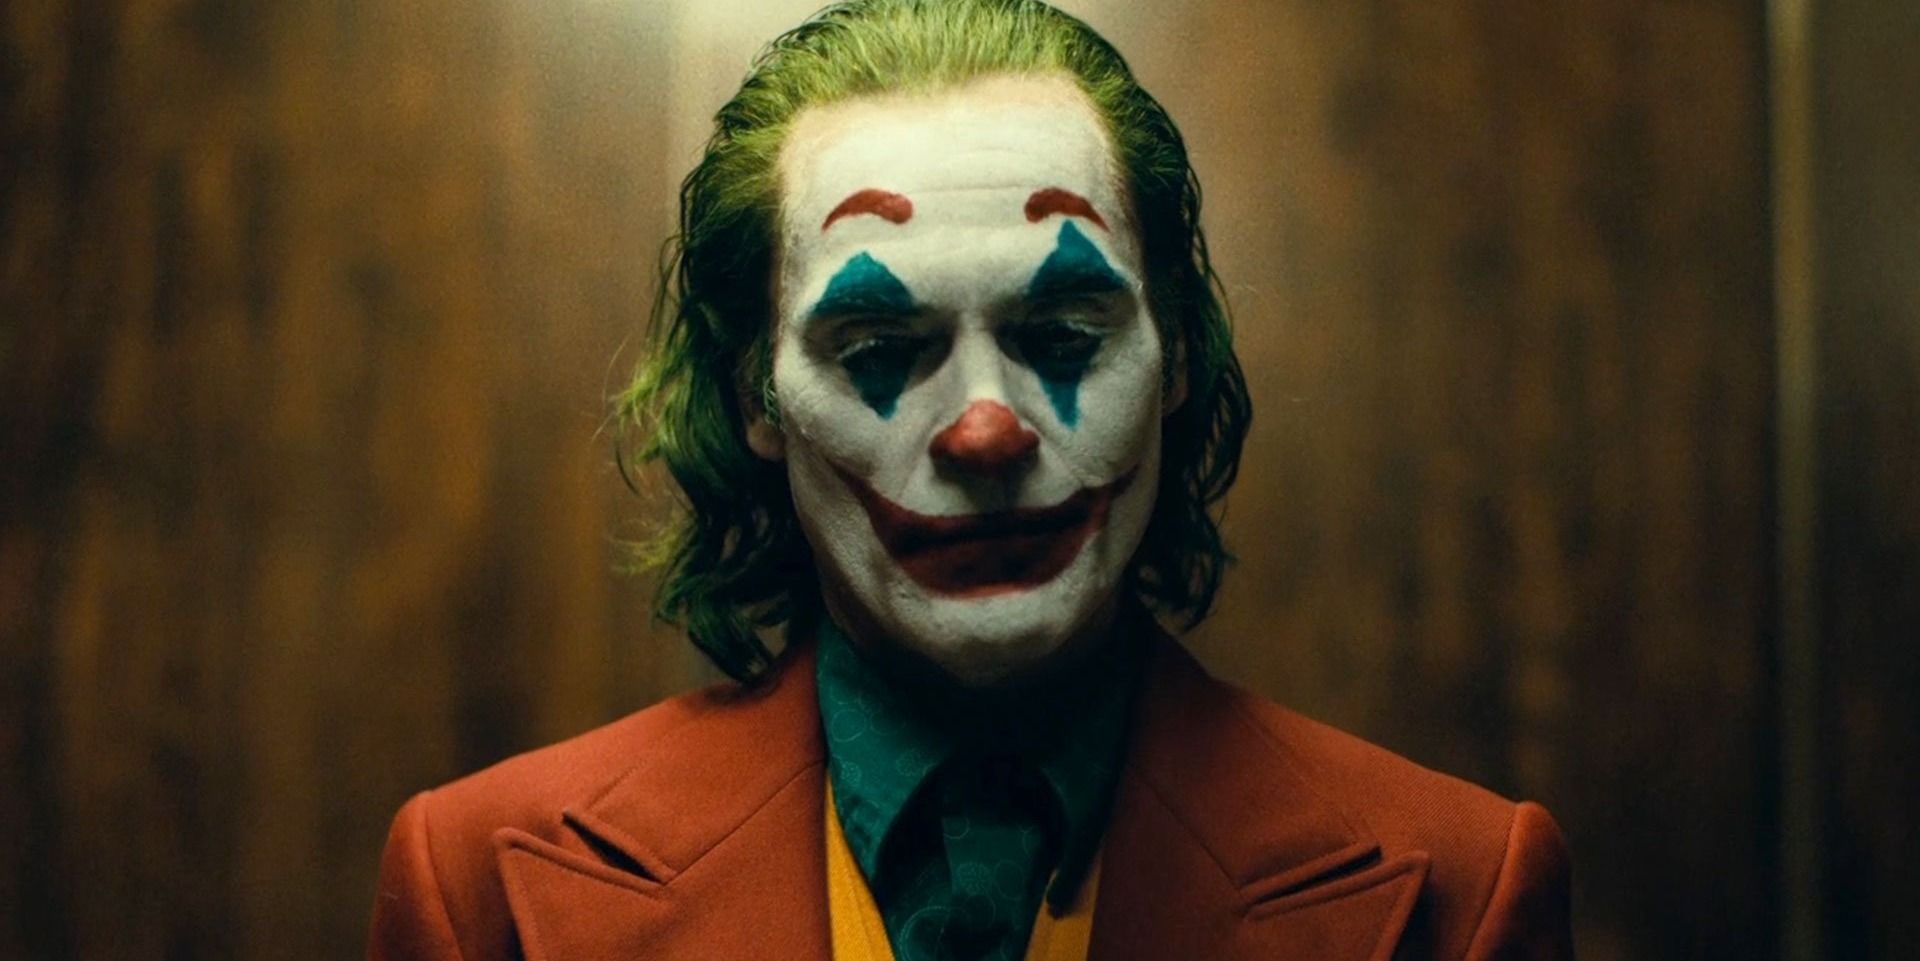 Ujawniono daty premier cyfrowych i Blu-ray Jokera